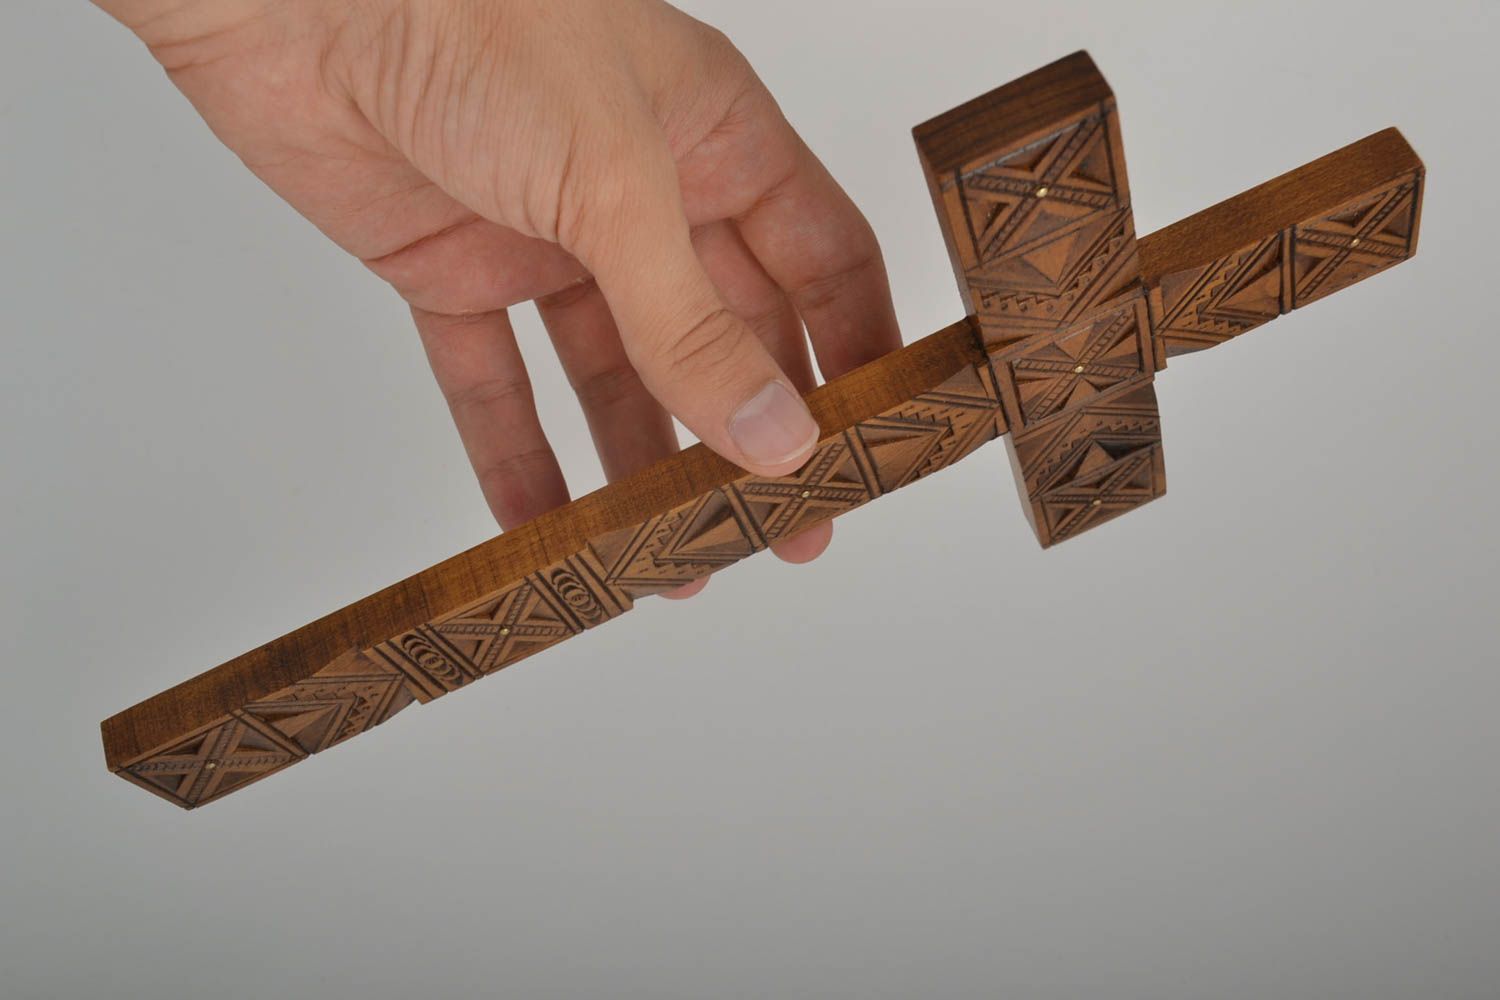 Cruz de madera hecha a mano artículo religioso original manualidad en